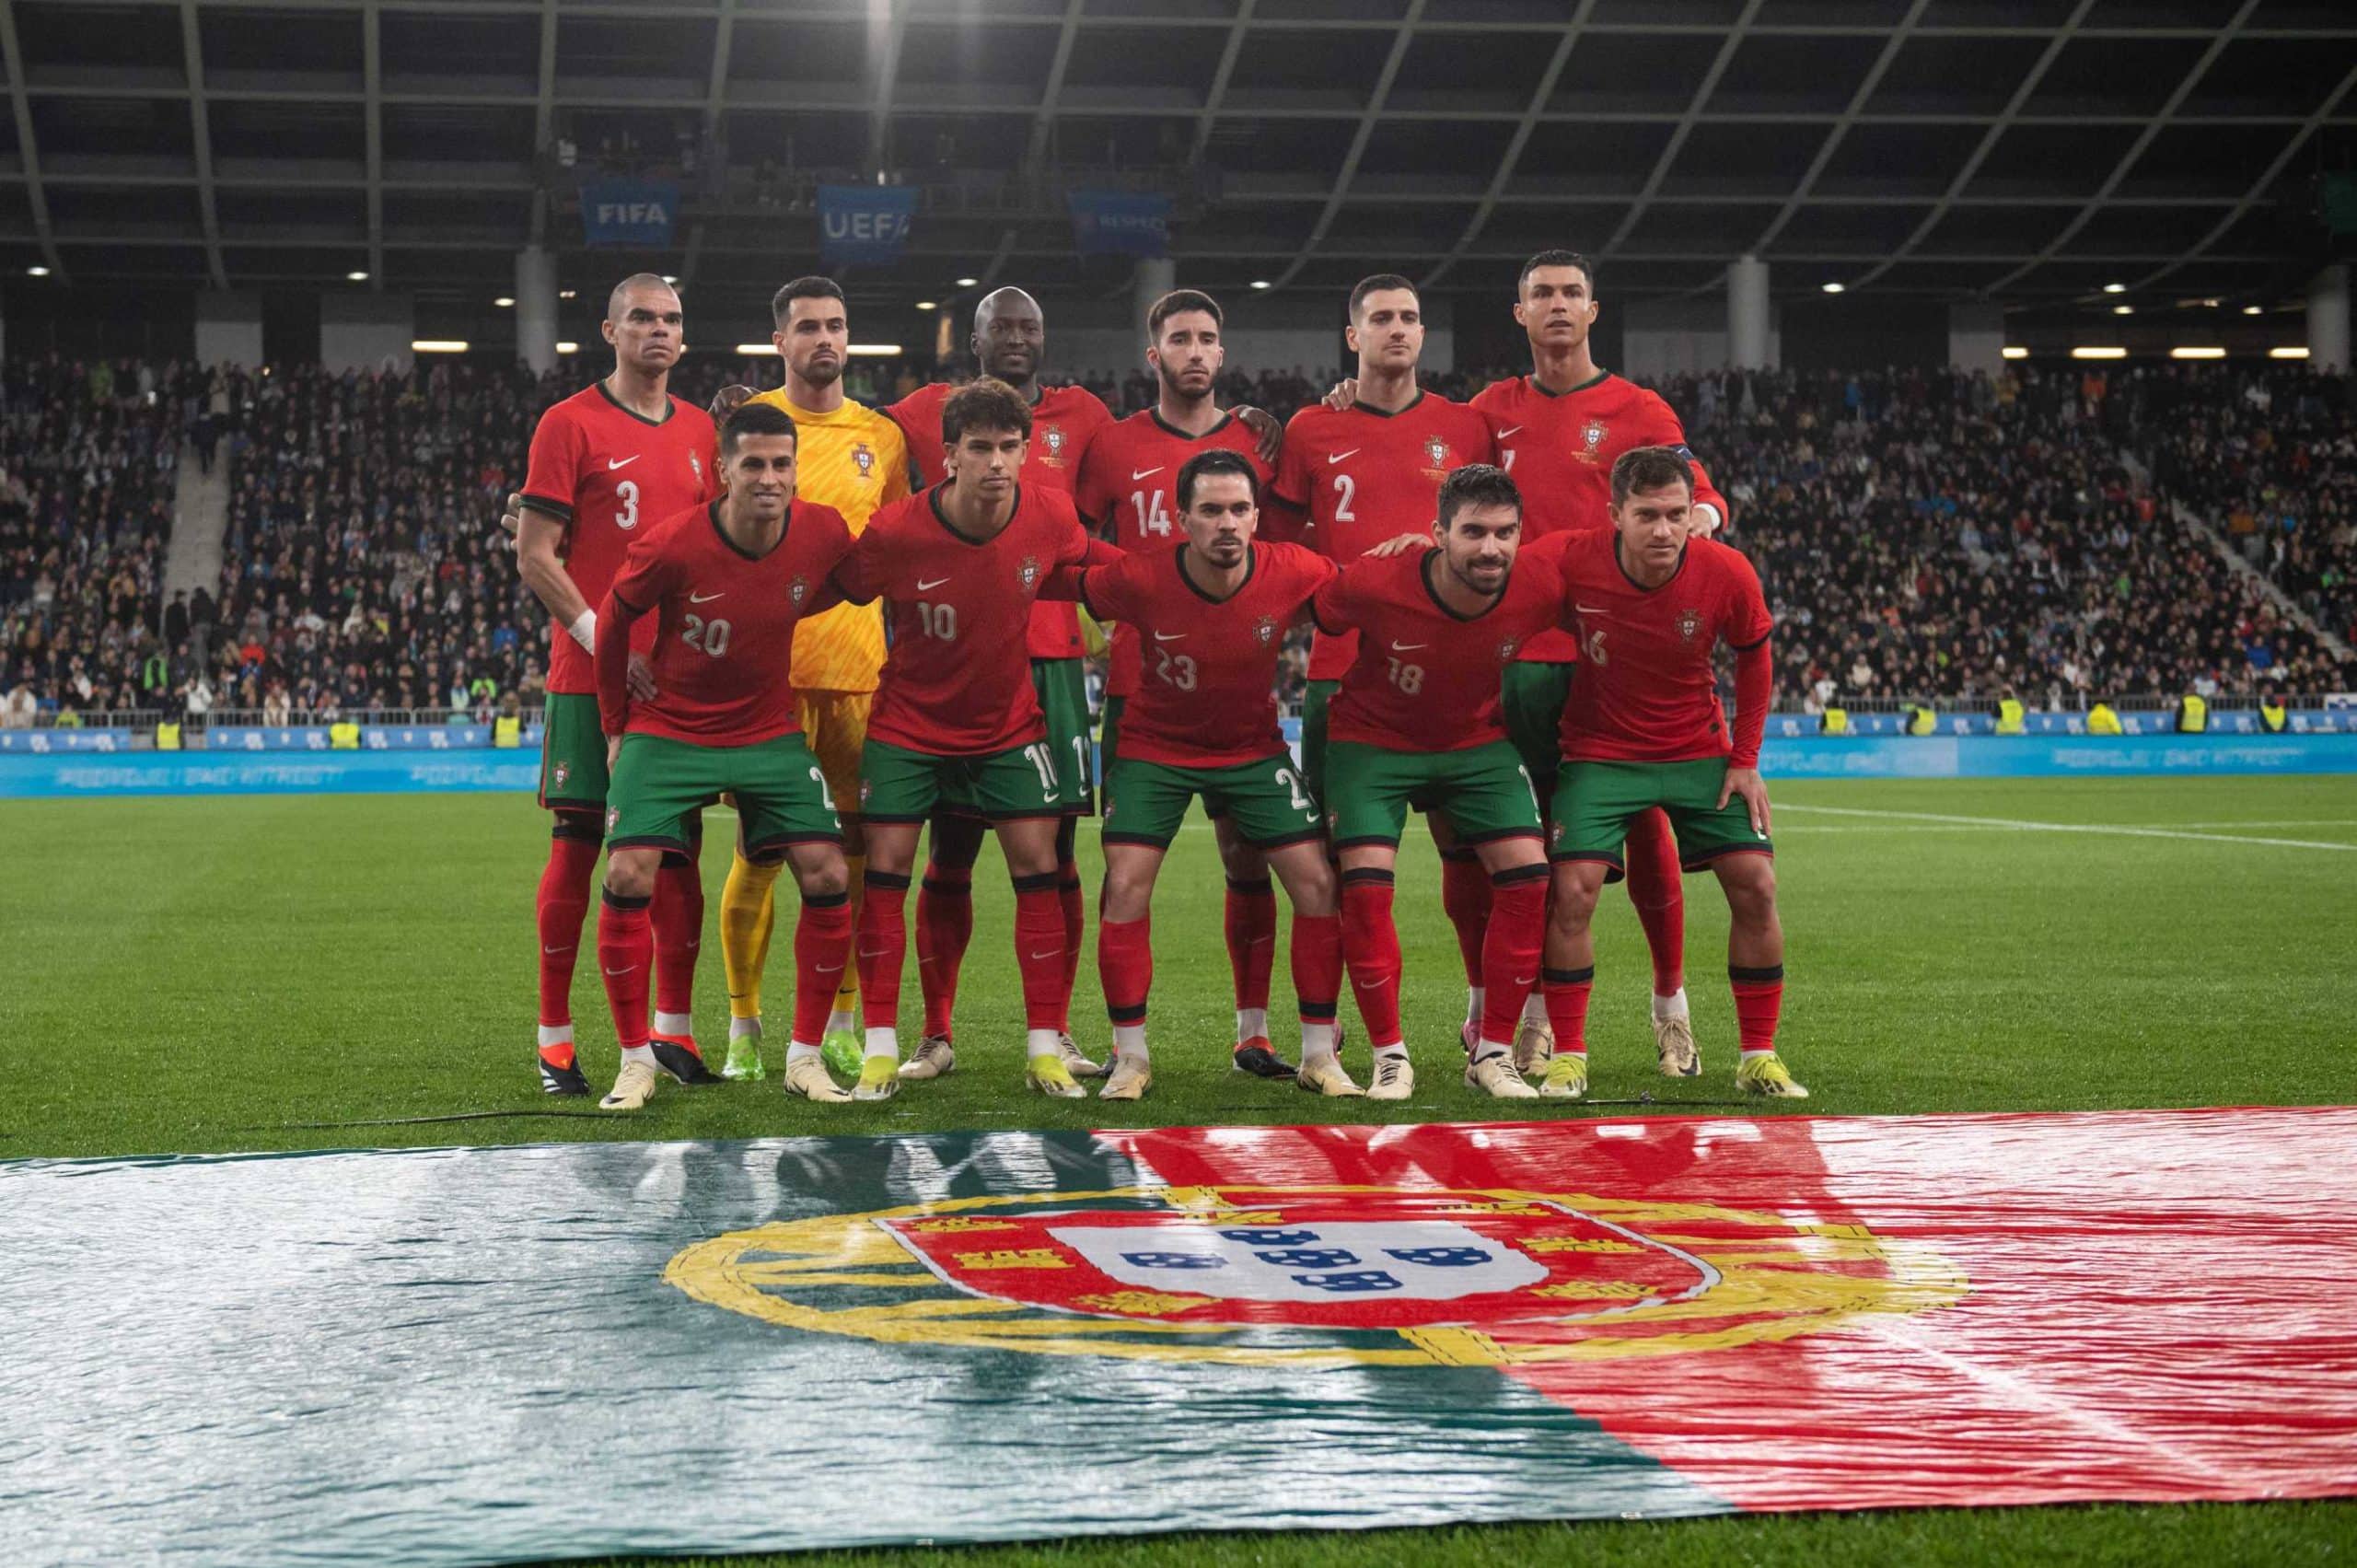 - Fifa atualiza as classificação das seleções masculinas de futebol | Confira a posição de Portugal